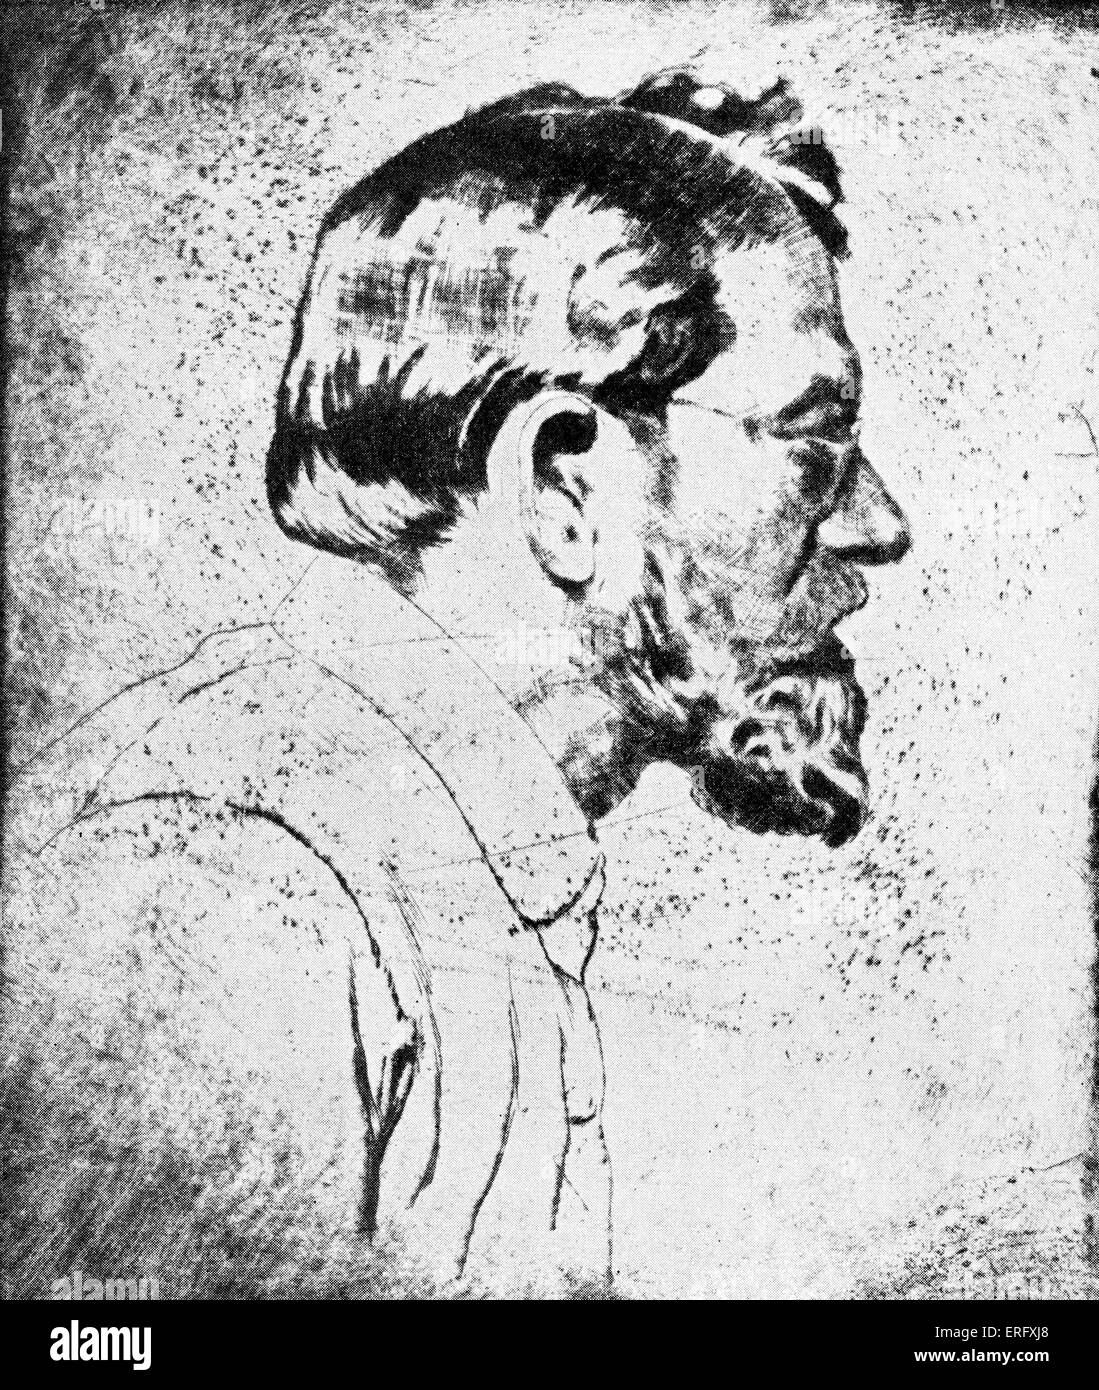 Emil Orlik - autorretrato dibujado en 1910. Artista checo, grabador y lithographer: 21 de julio de 1870 - 28 de septiembre de 1932 Foto de stock